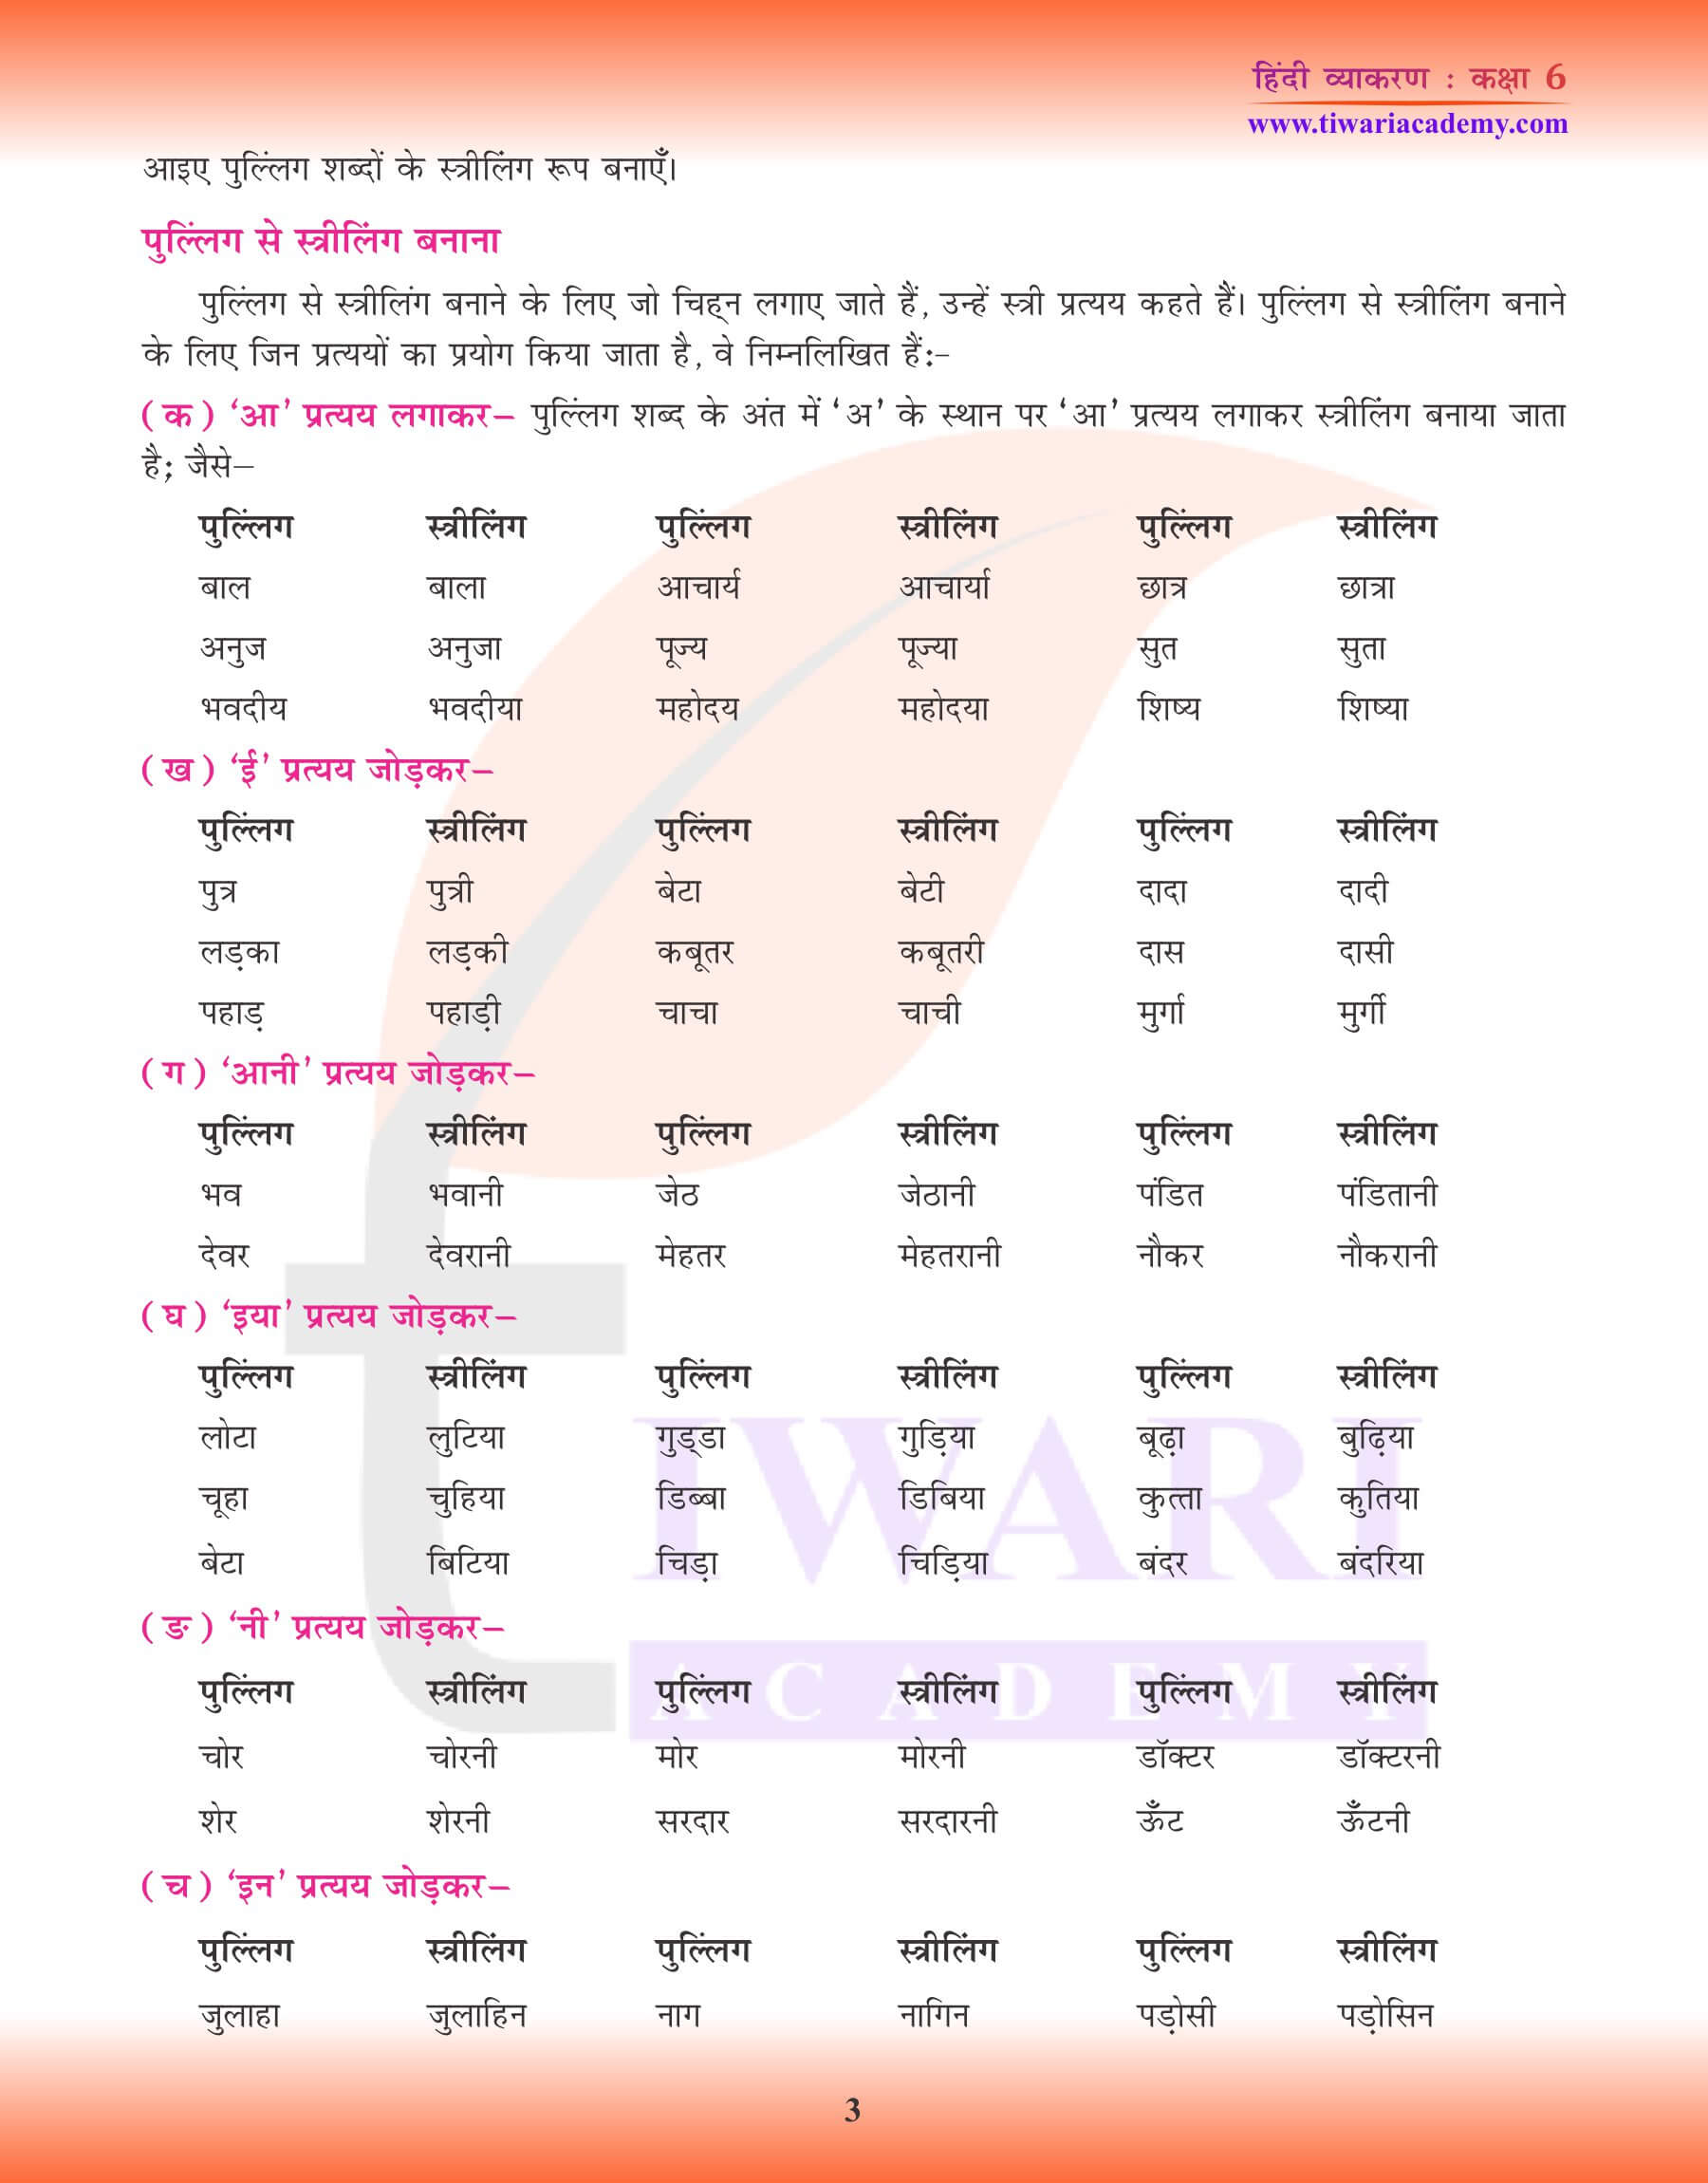 कक्षा 6 हिंदी व्याकरण लिंग भेद के लिए अभ्यास